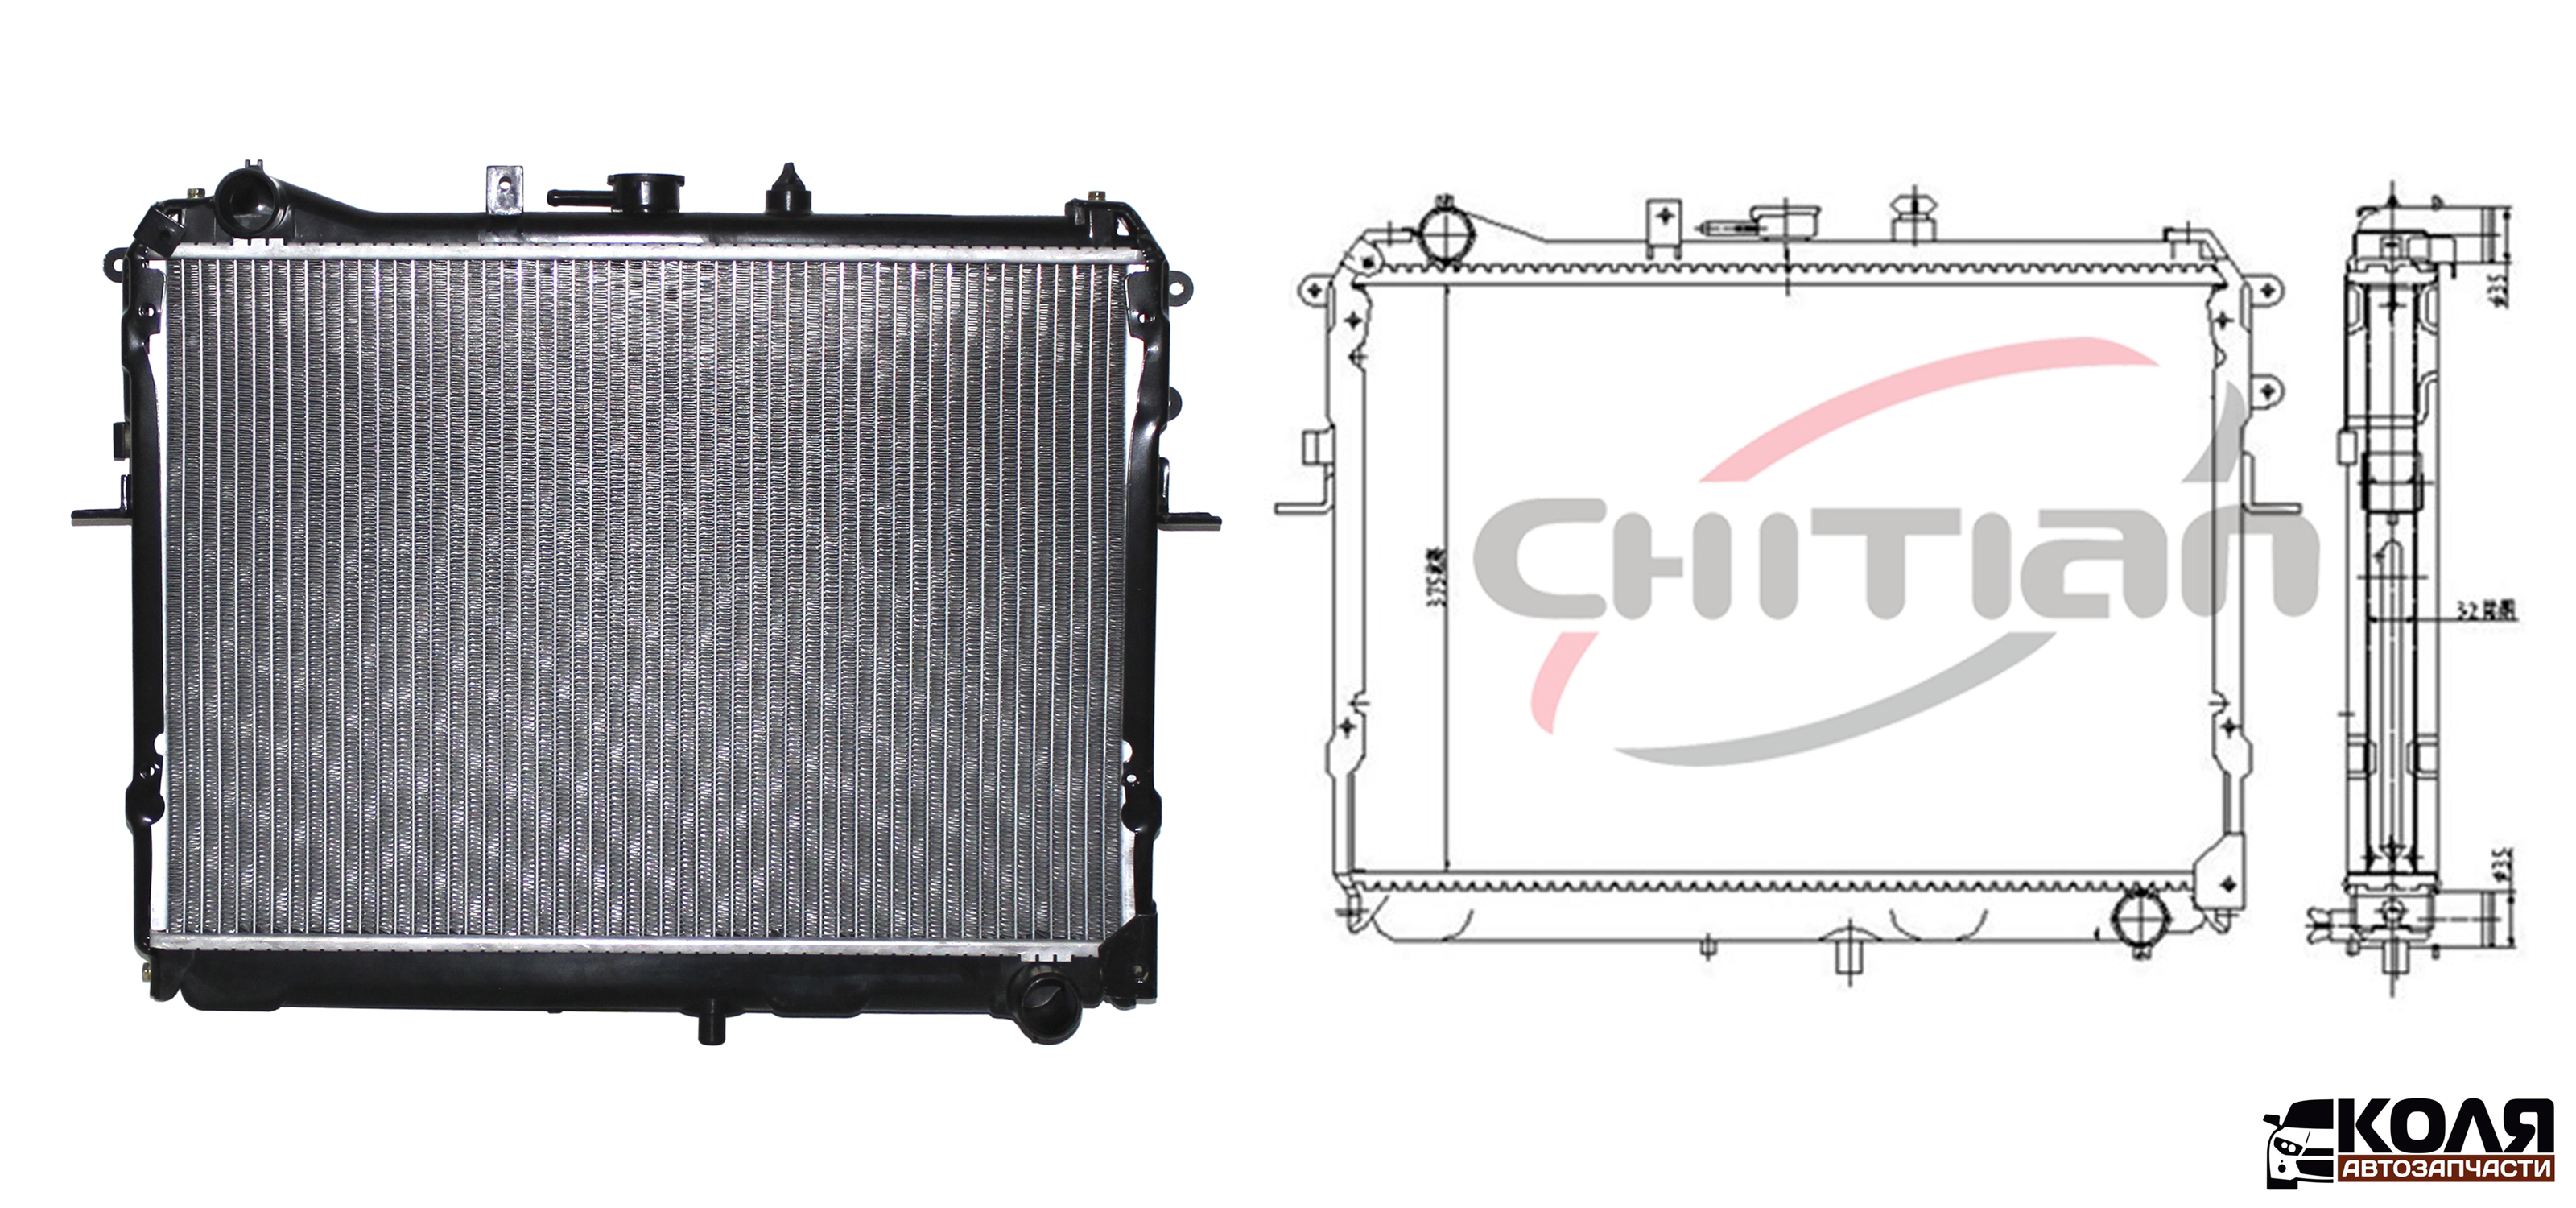 Радиатор охлаждения двигателя Mazda Bongo R2 RF 377*538*26 MT CT-MZ051 (CHITIAN)